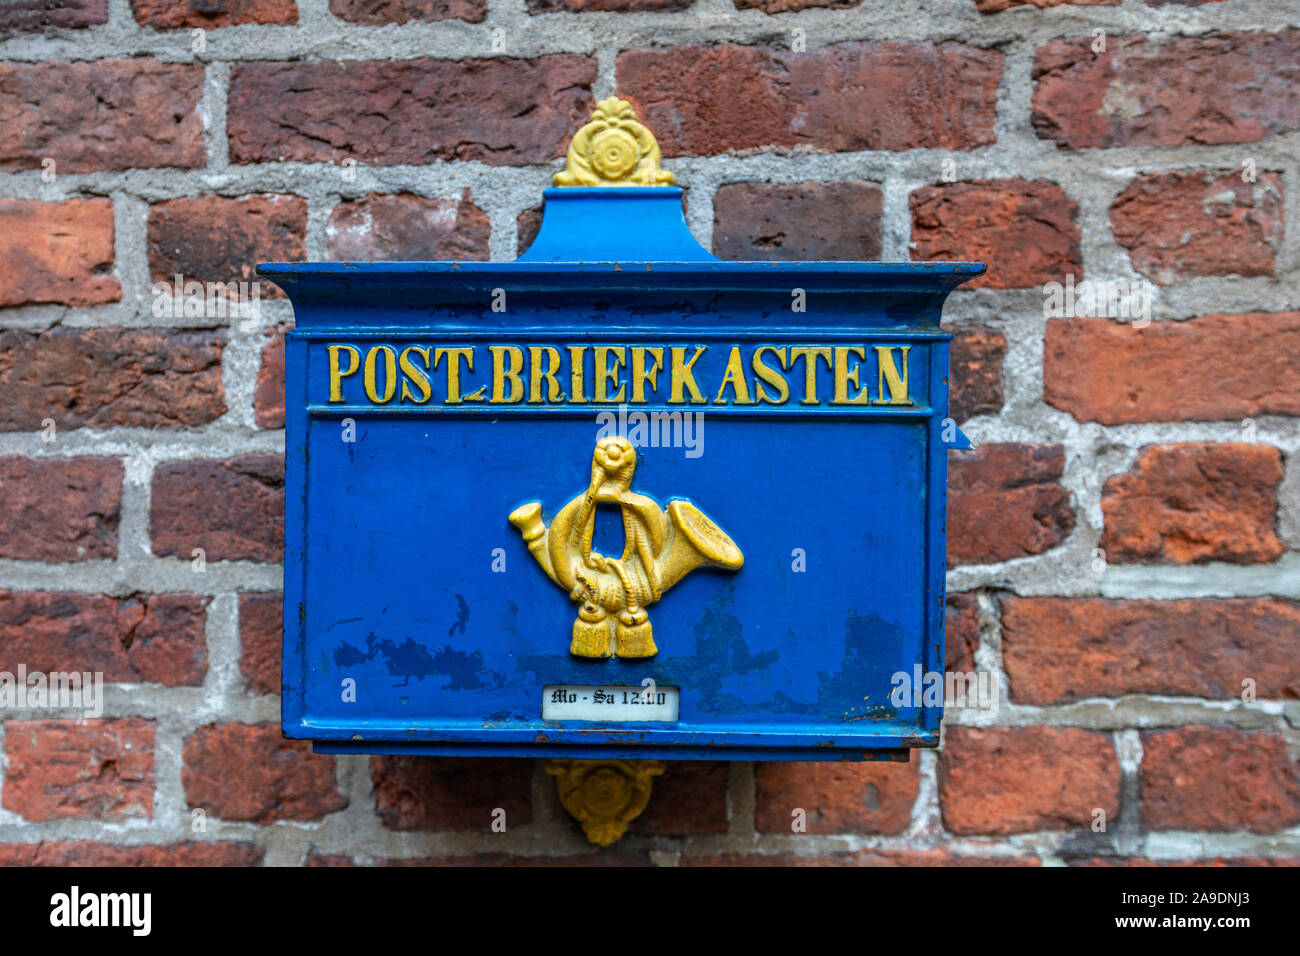 Alte blaue Mail Briefkasten in der Böttcherstraße, Bremen, Deutschland  Stockfotografie - Alamy